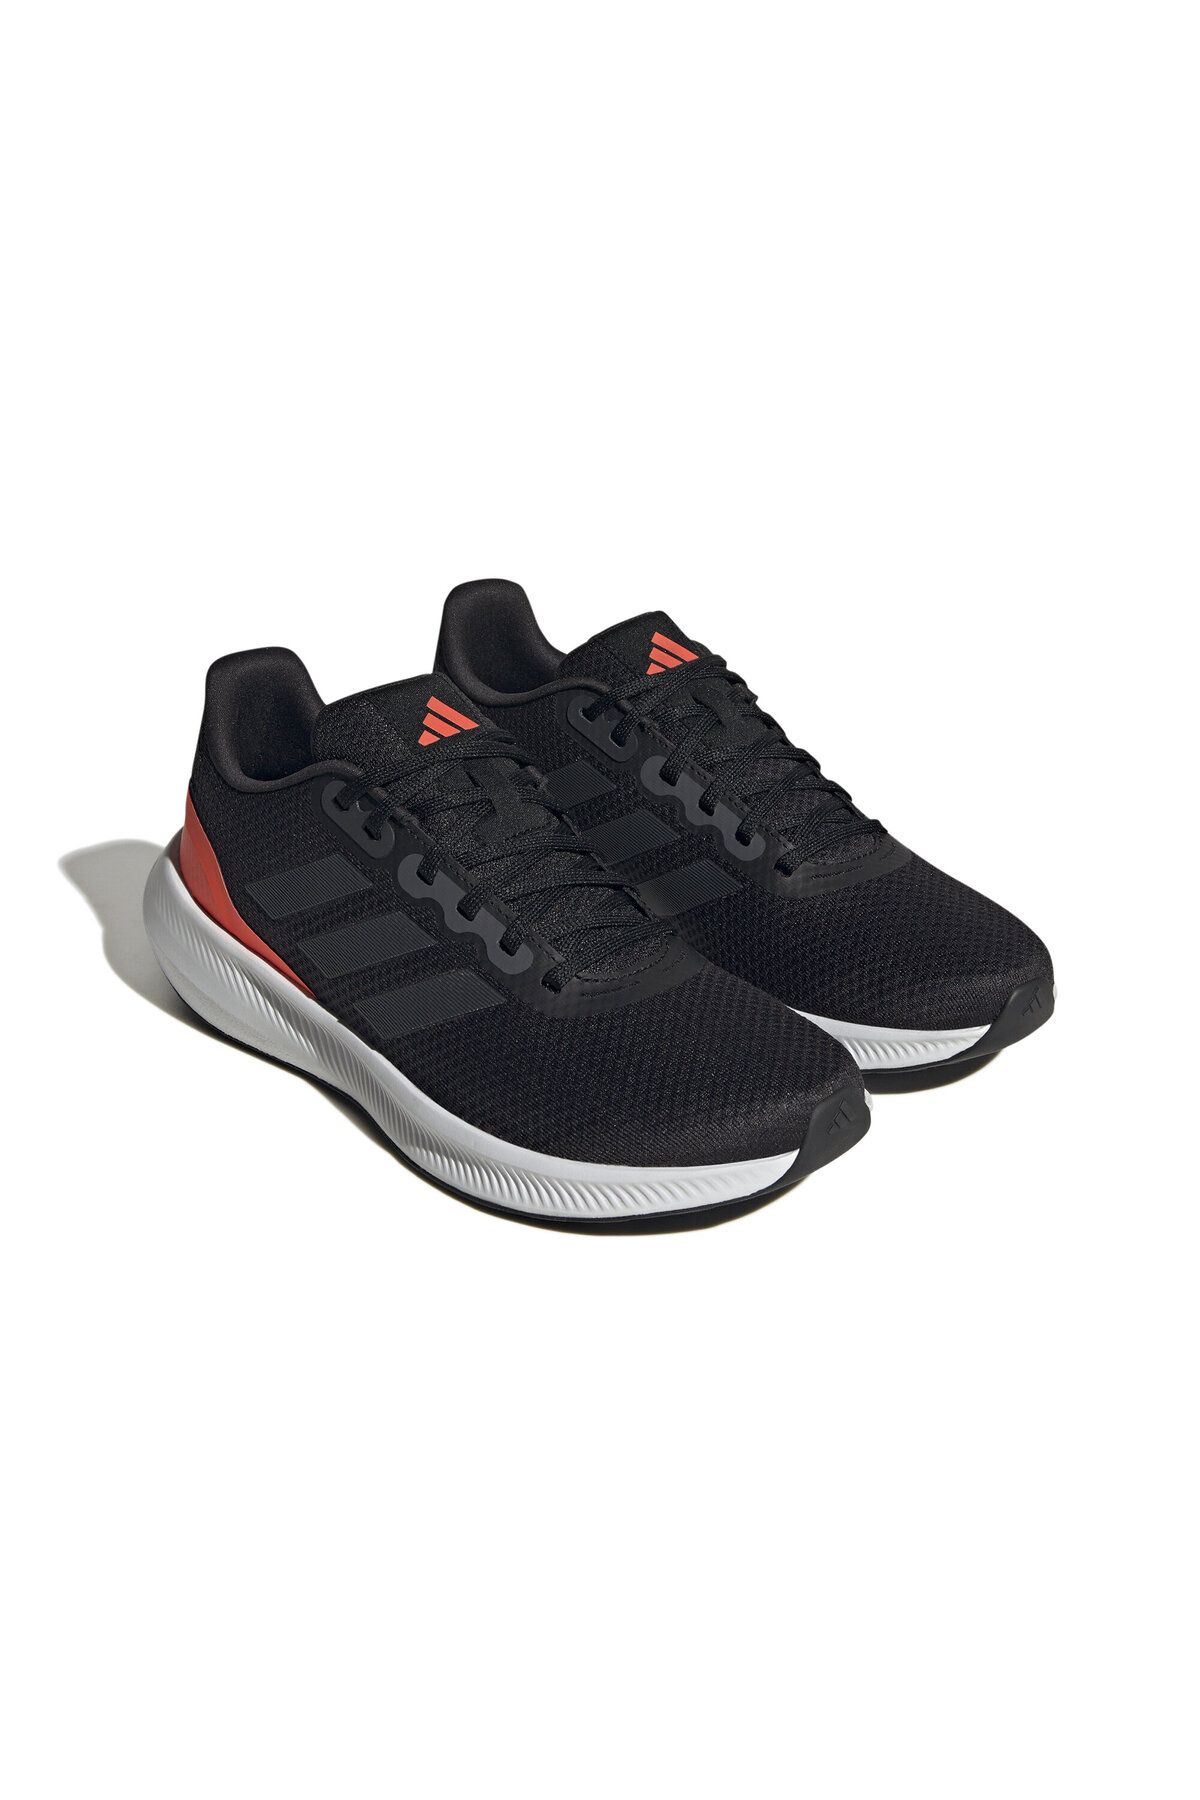 adidas Günlük Rahat Taban Hafif Esnek Yürüyüş Koşu Ayakkabısı Unisex Spor Ayakkabı Sneaker